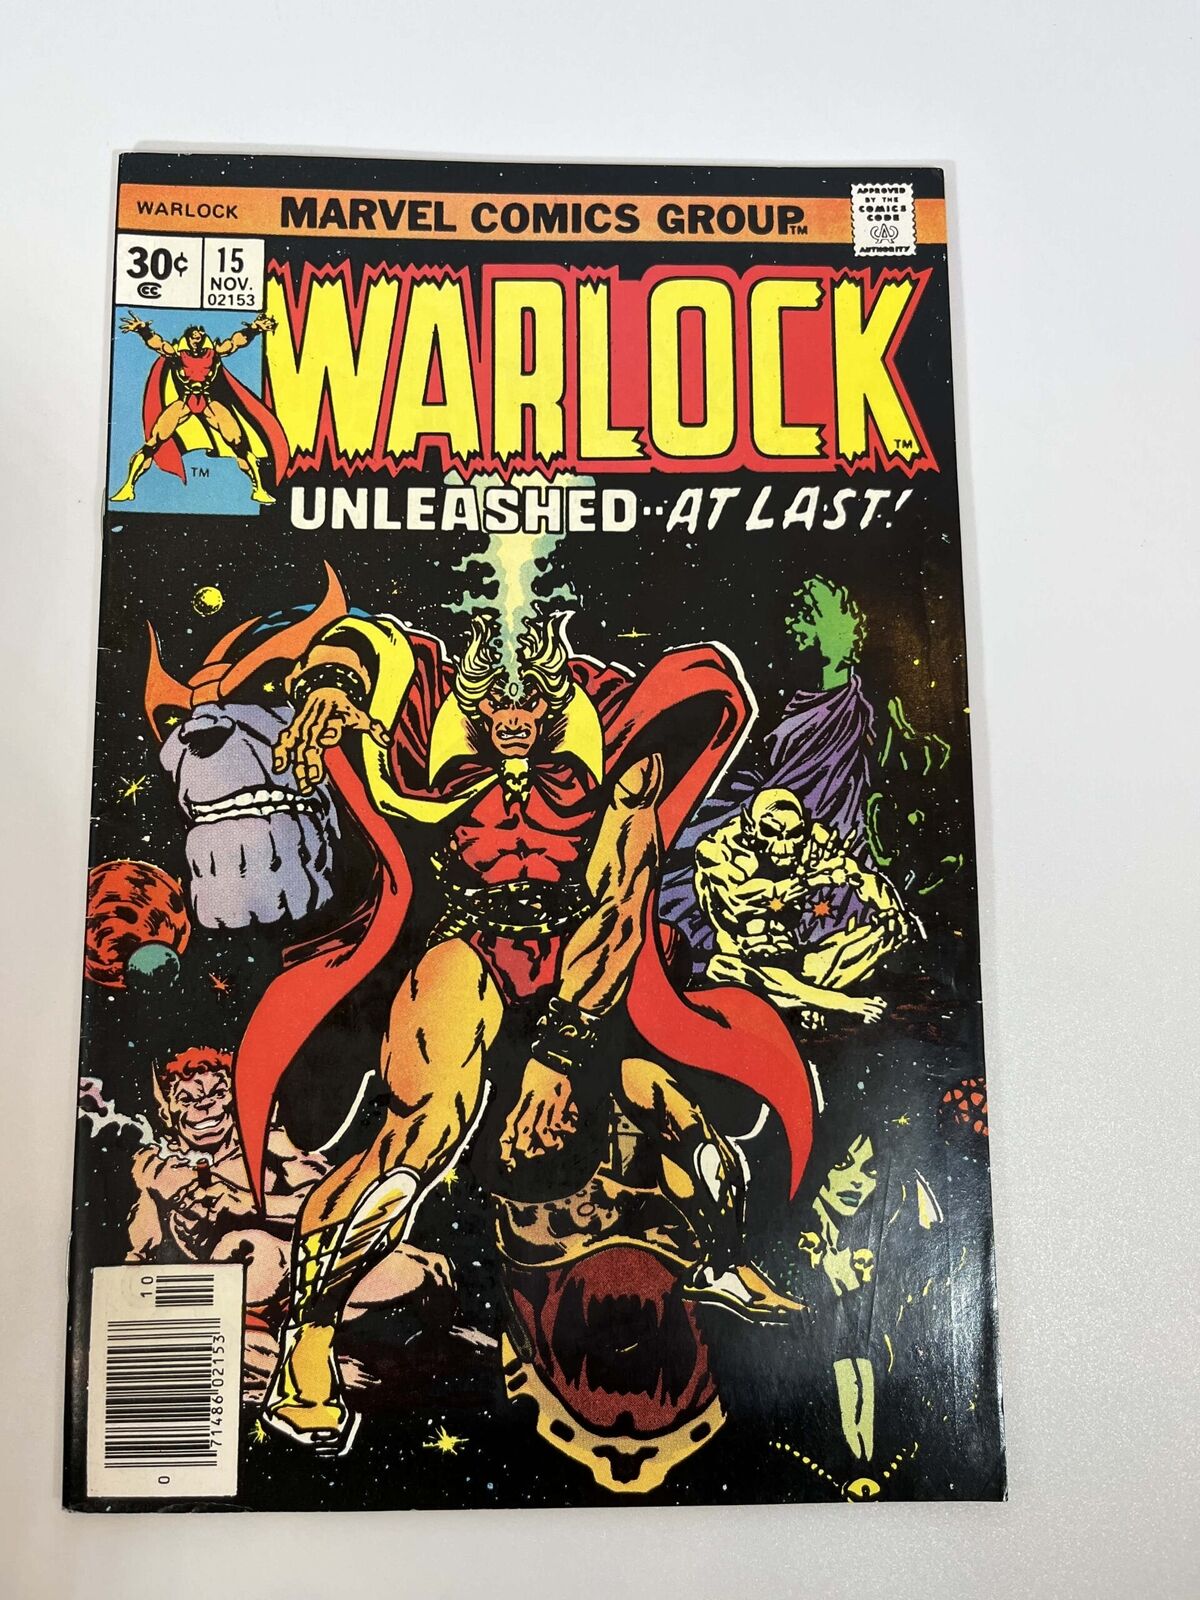 Warlock #15 (1976) in 8.0 Very Fine